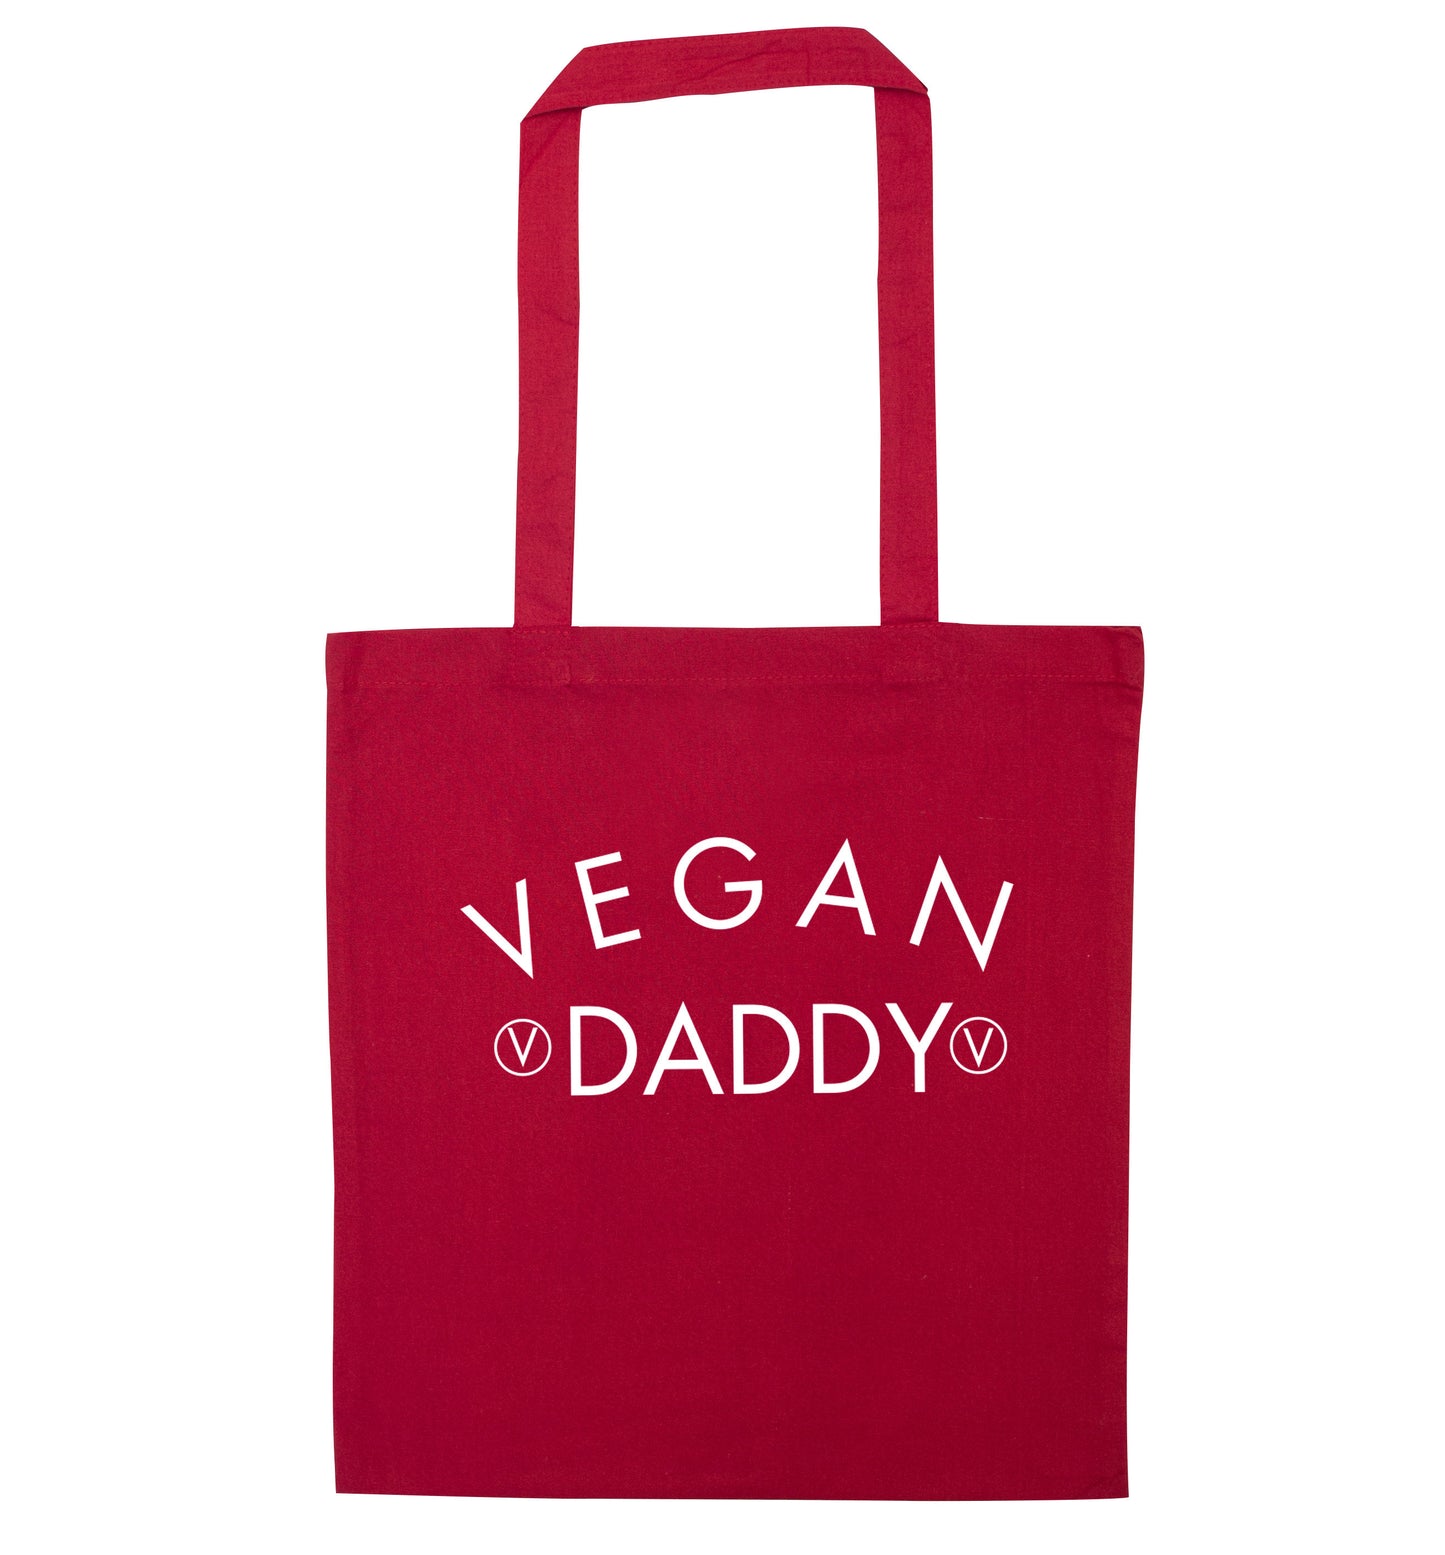 Vegan daddy red tote bag